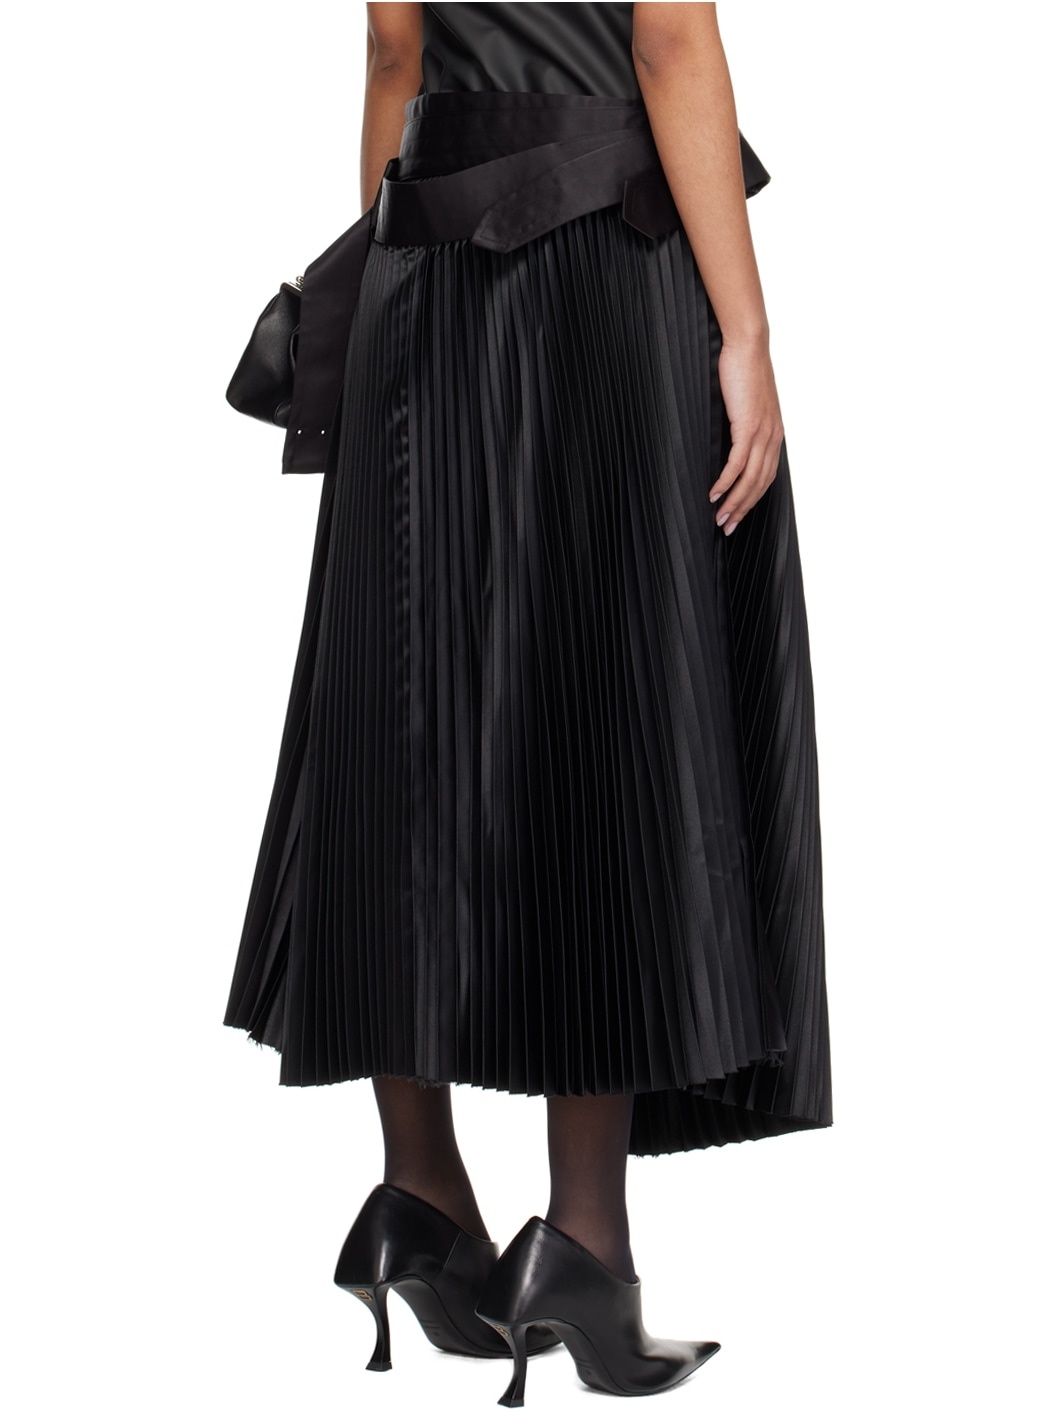 Black Belted Midi Skirt - 3